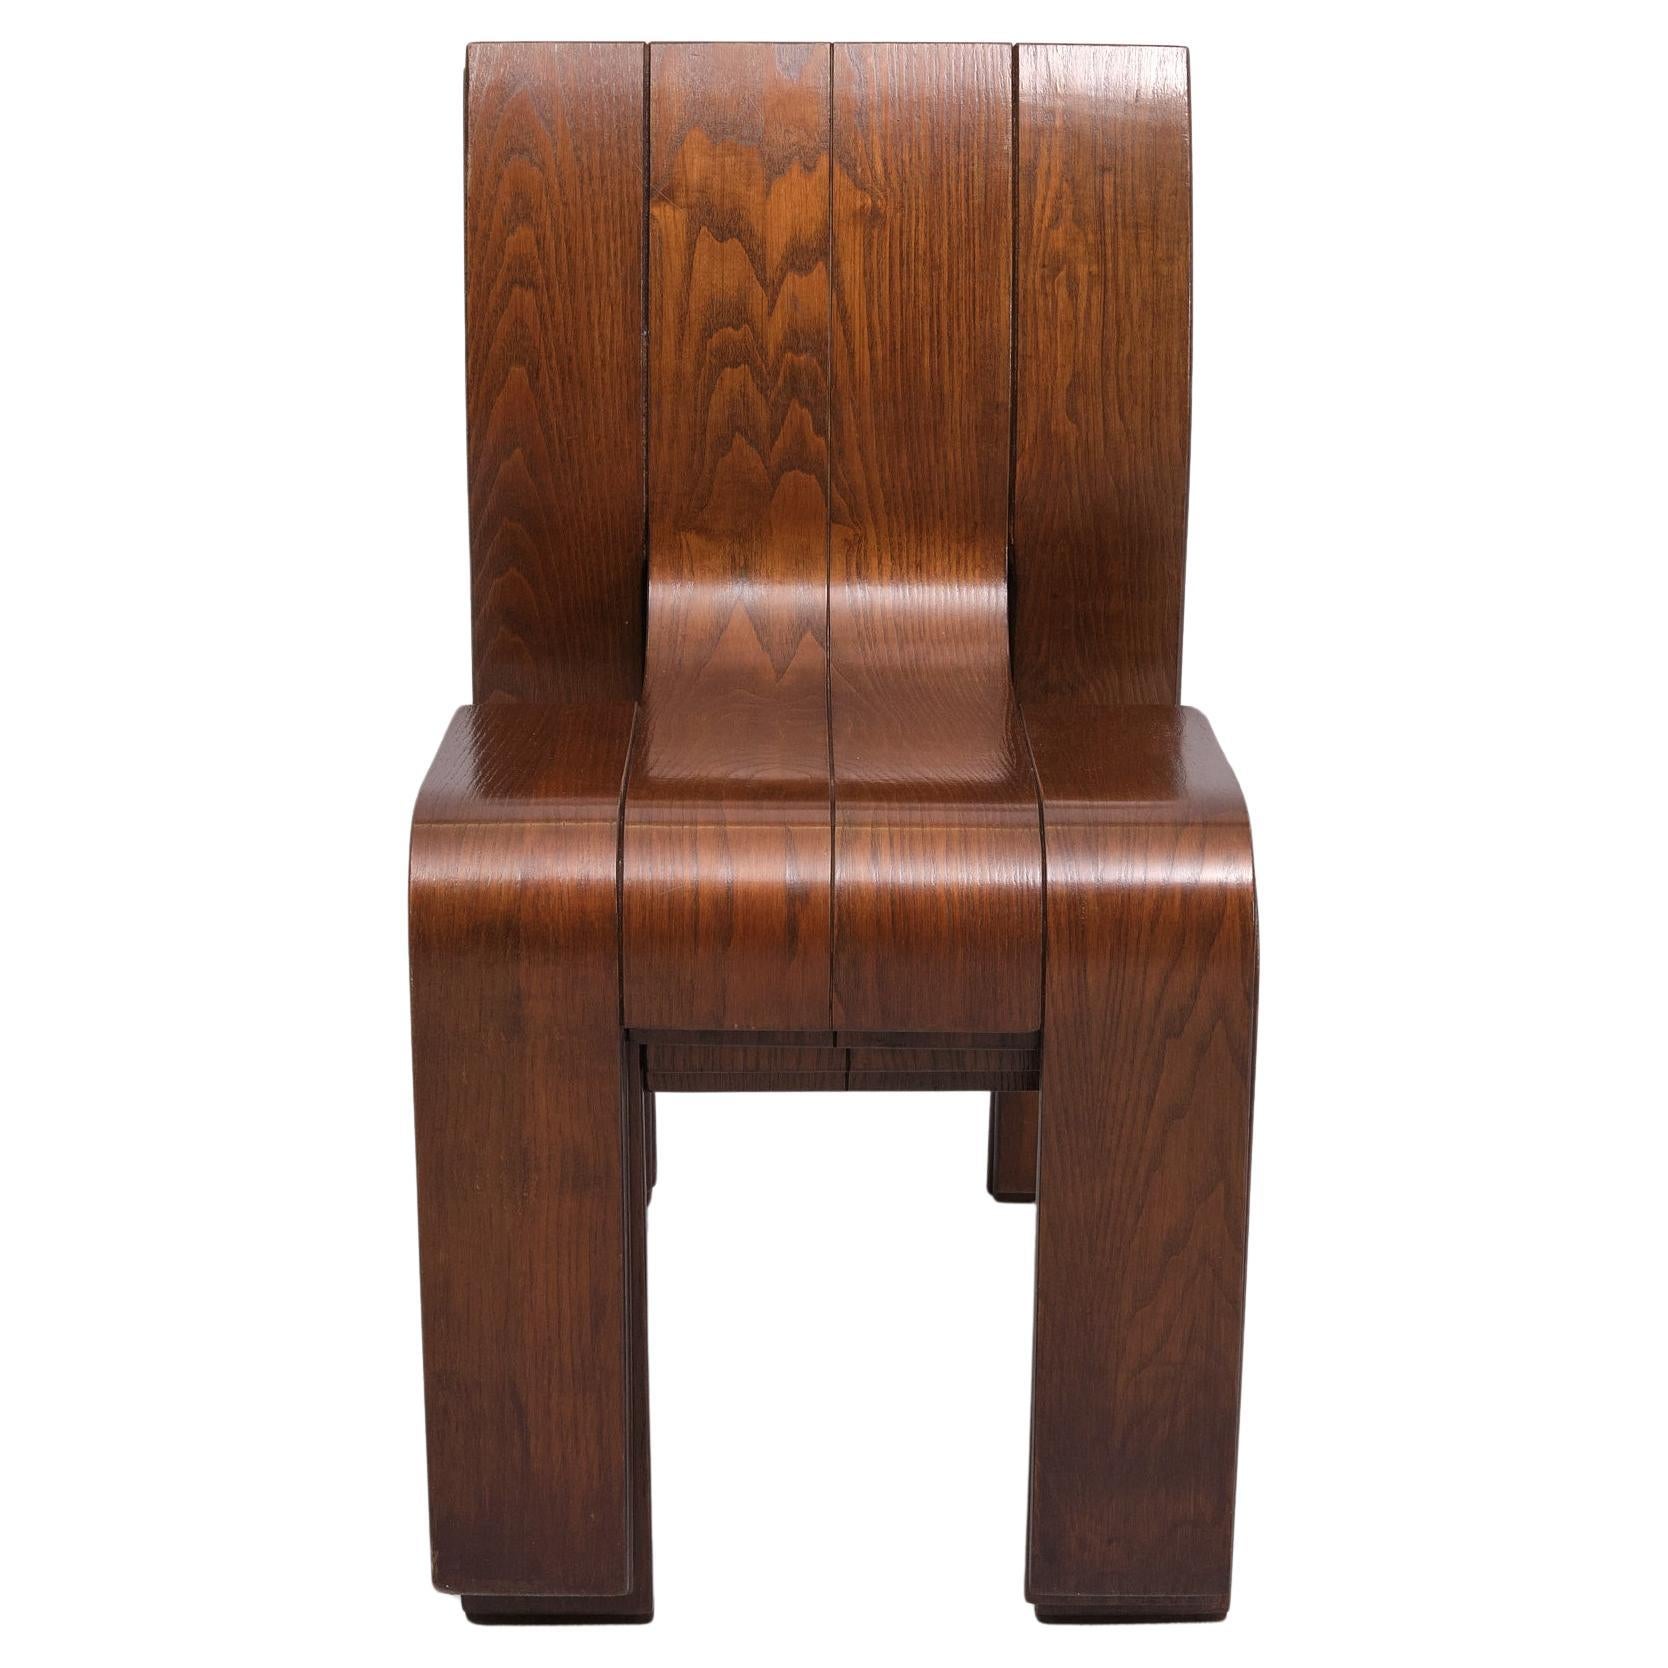 Ensemble de quatre chaises Strip conçues par Gijs Bakker pour Castelijn. Cette pièce emblématique du design néerlandais est tout simplement incroyable. Conçu par le célèbre designer Gijs Bakker et fabriqué par Castelijn dans les années 1970. Ces